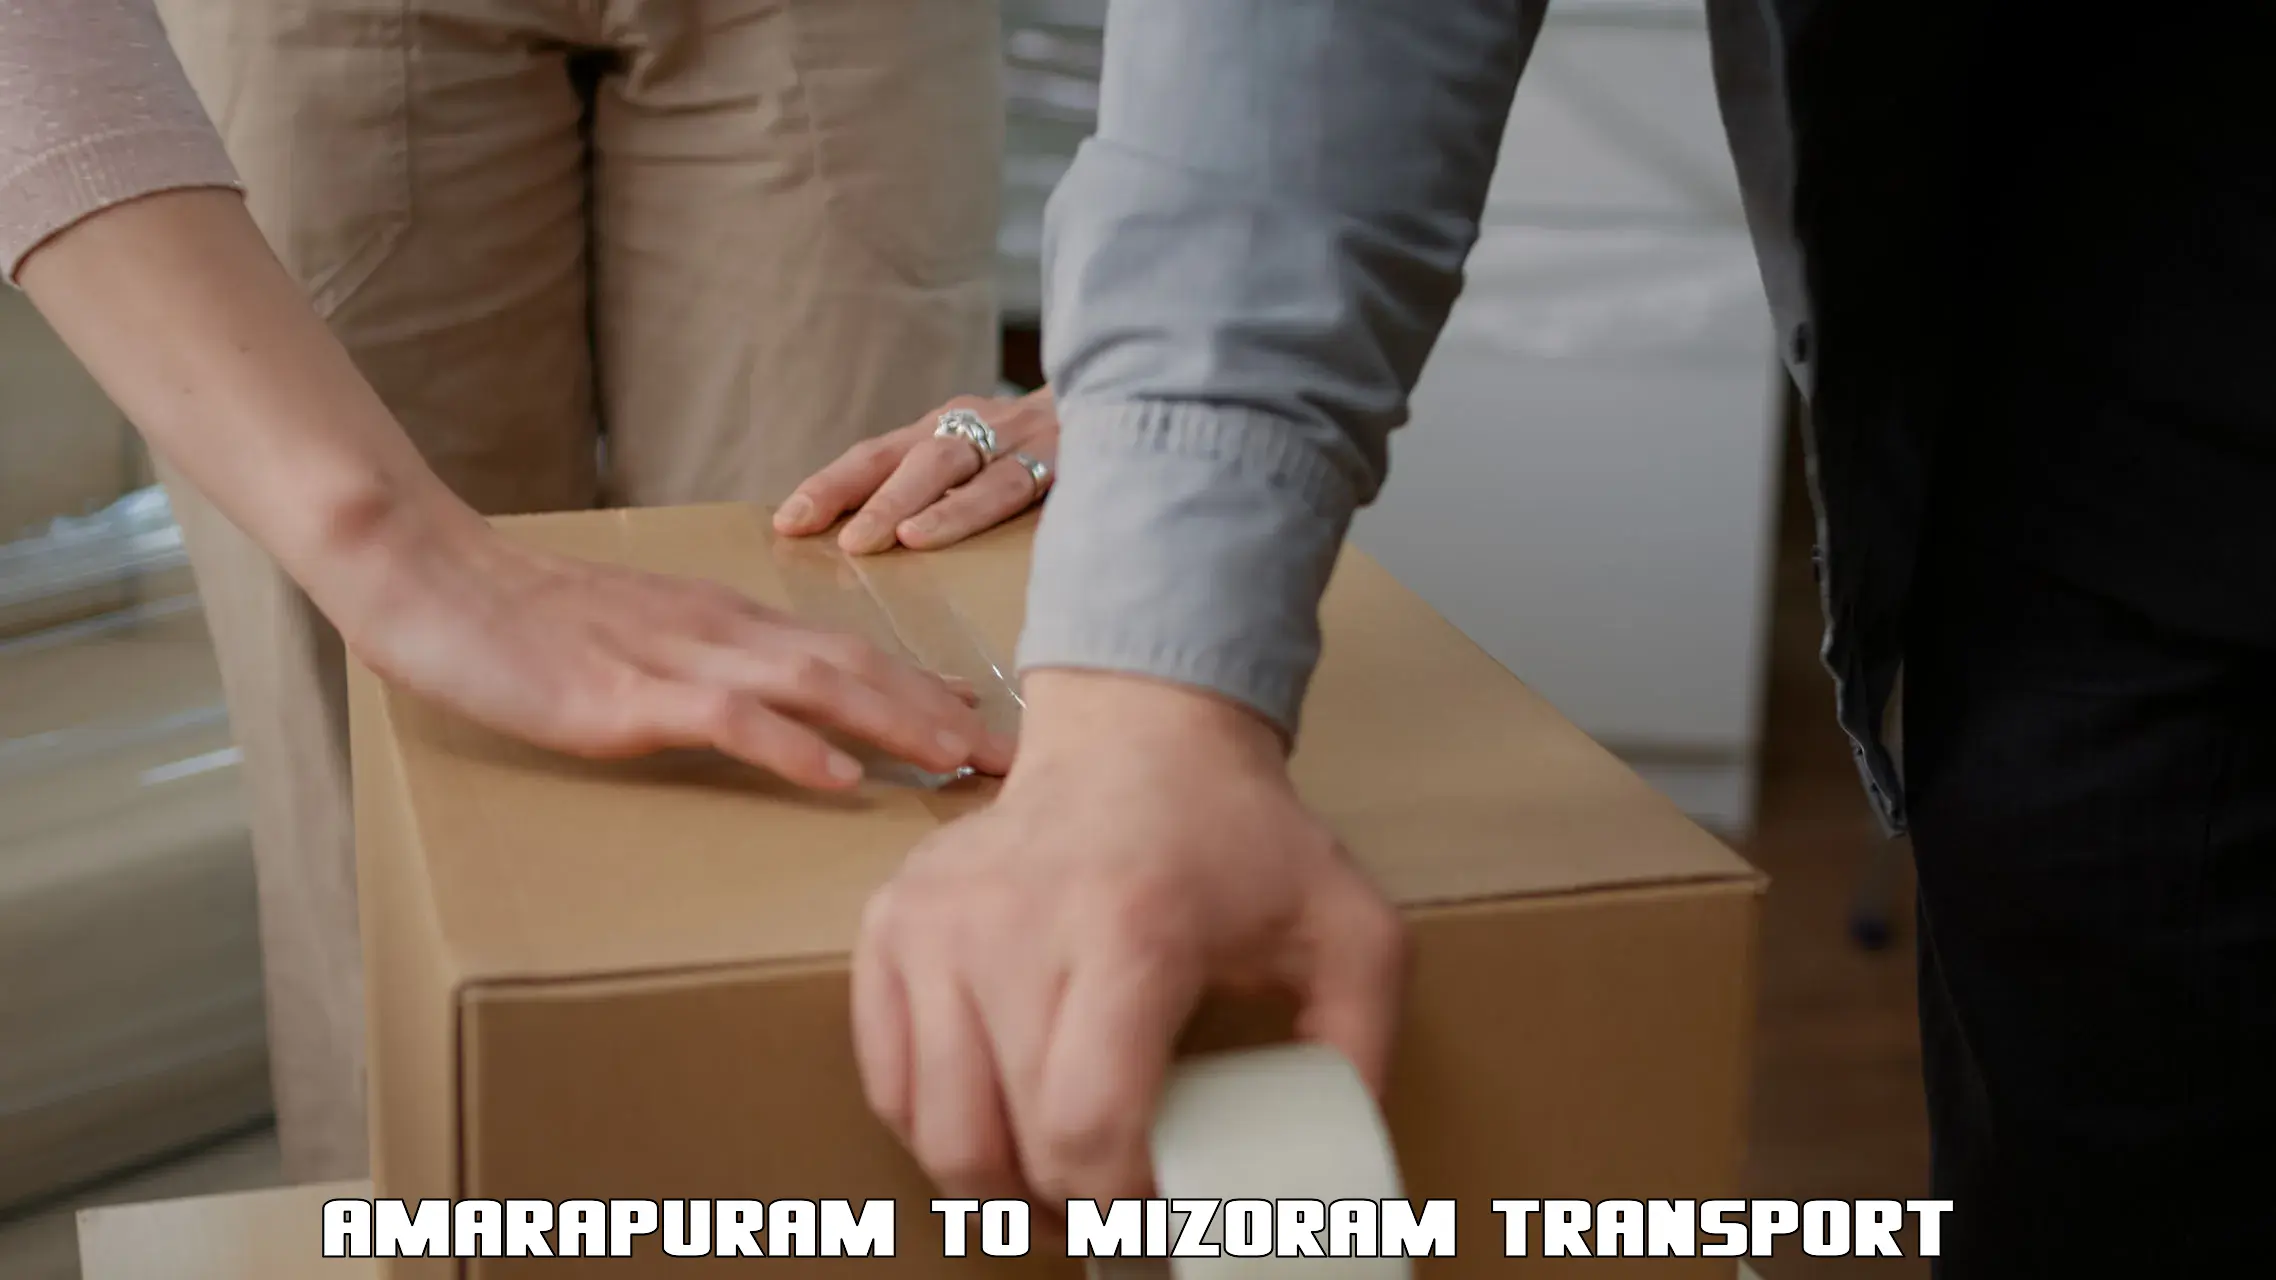 Material transport services Amarapuram to Mizoram